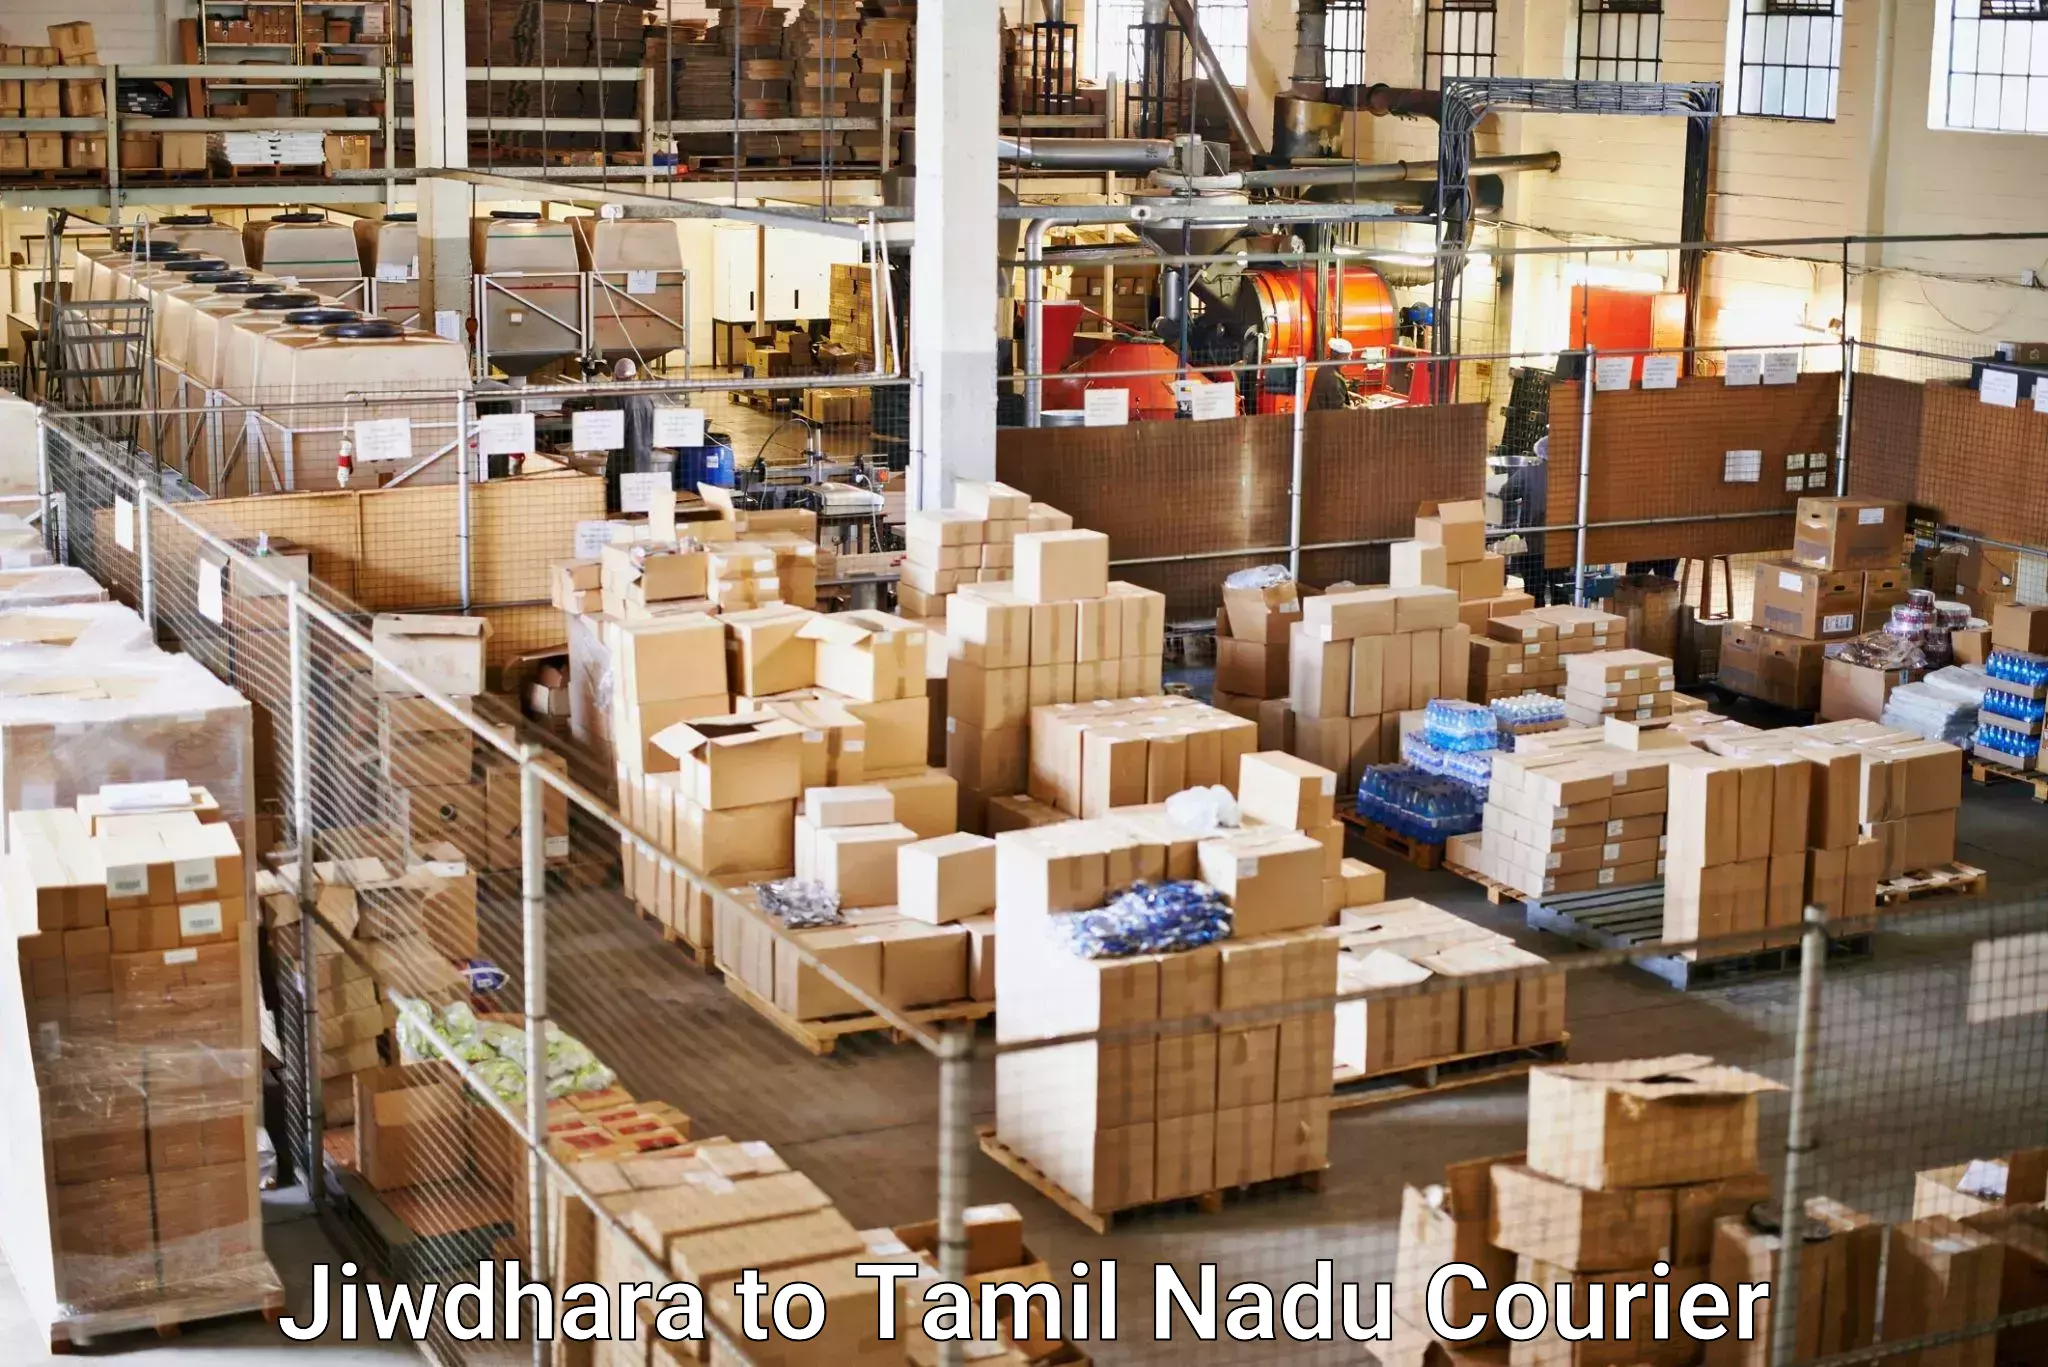 Express logistics providers in Jiwdhara to Tamil Nadu